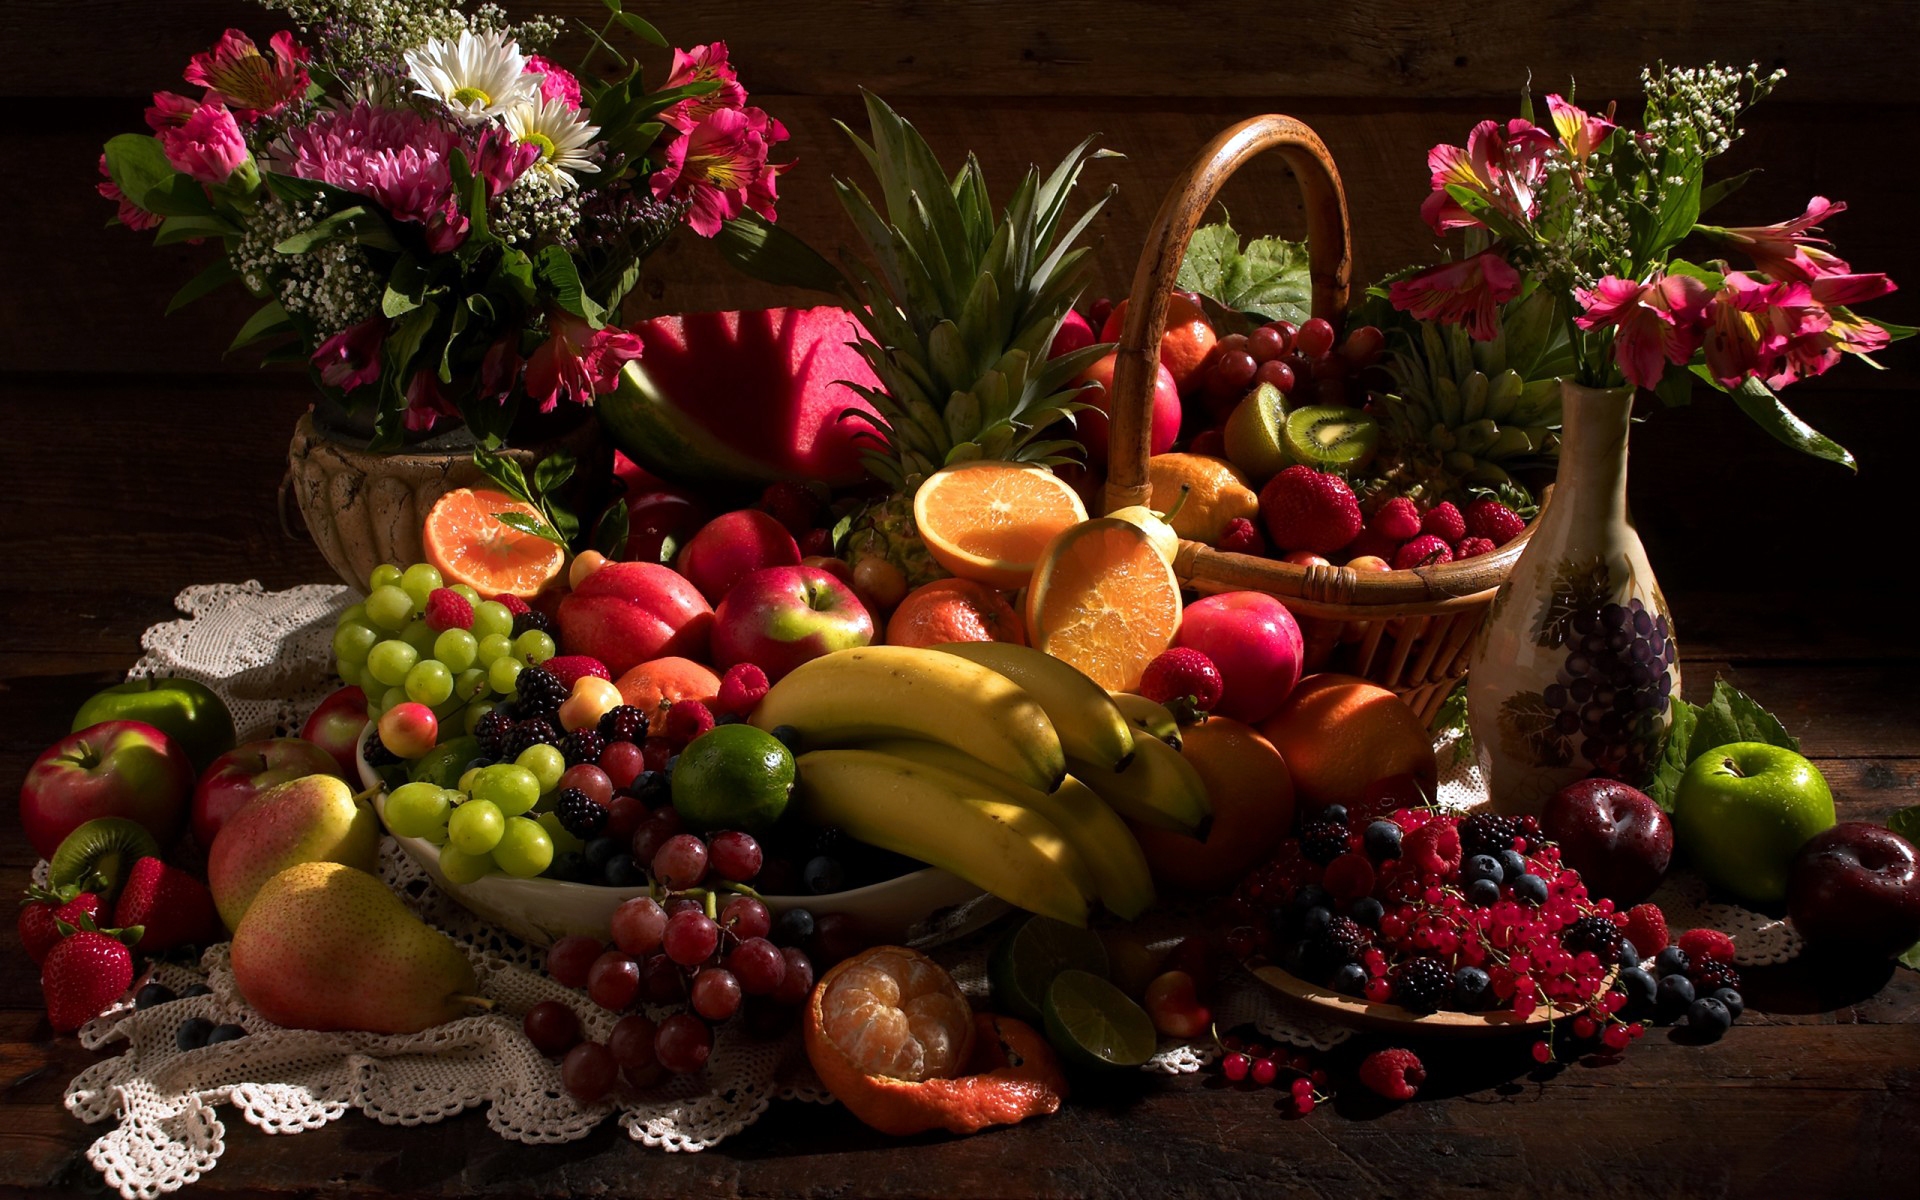 Картинки Натюрморт, стол, фрукты, цветы фото и обои на рабочий стол